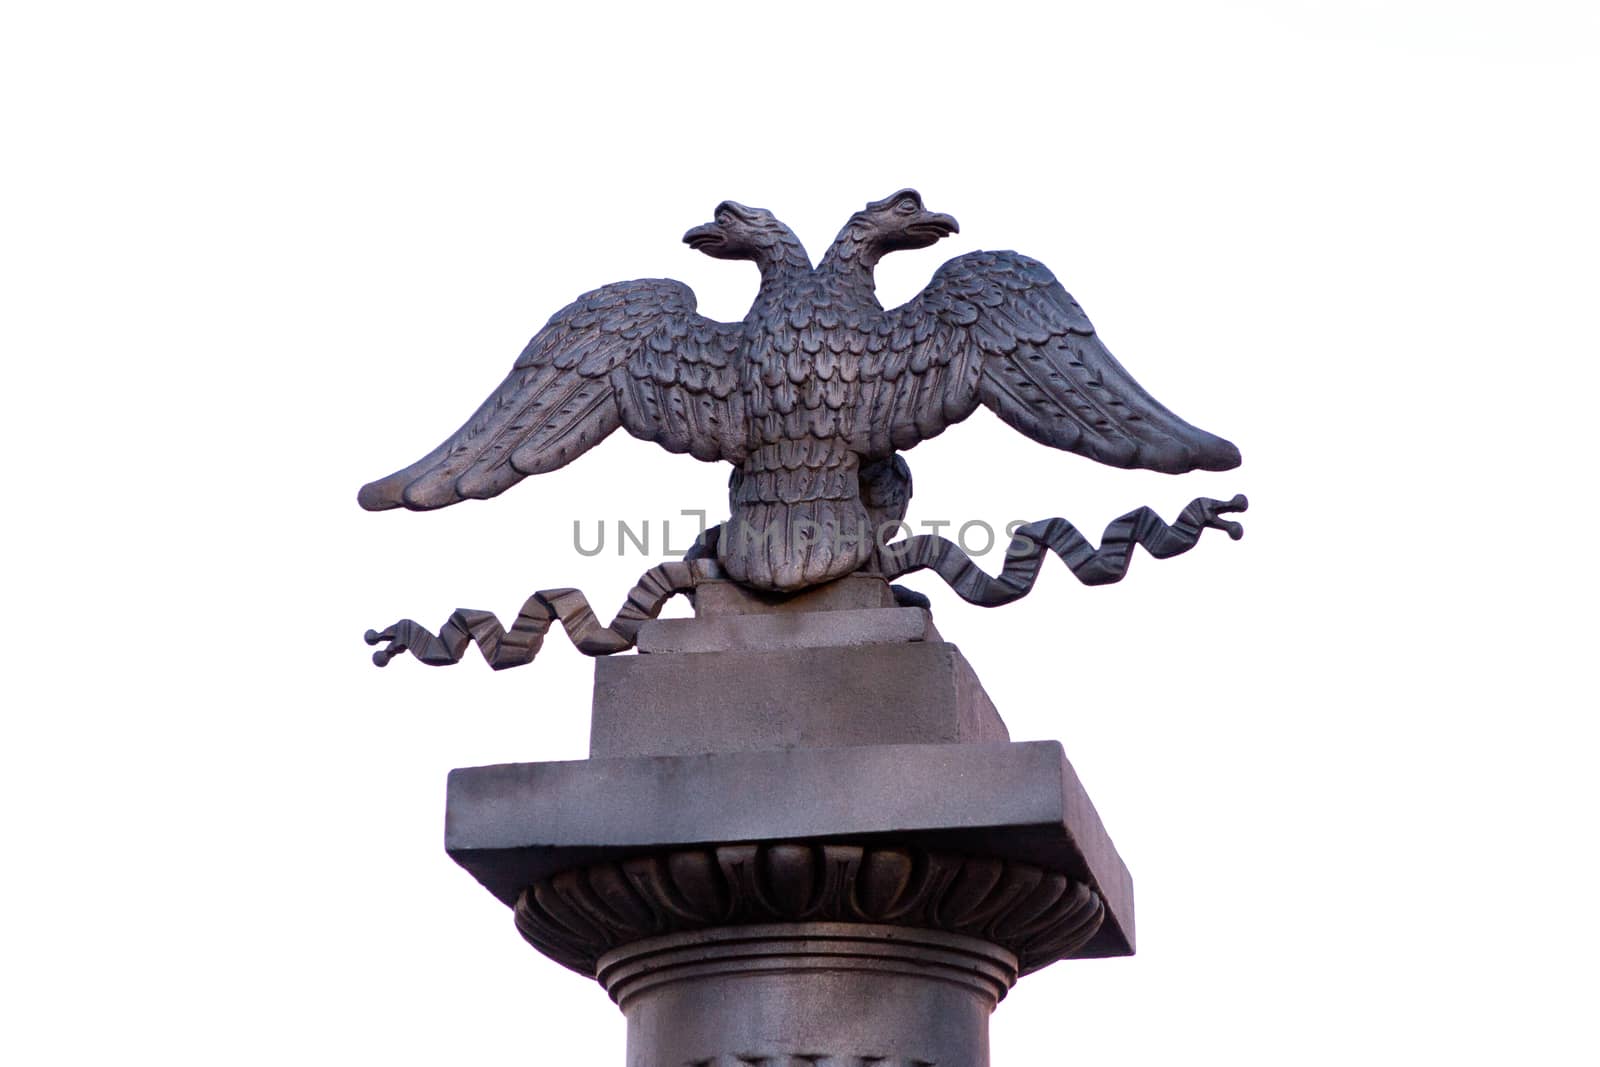 bicephalous eagle by vsurkov